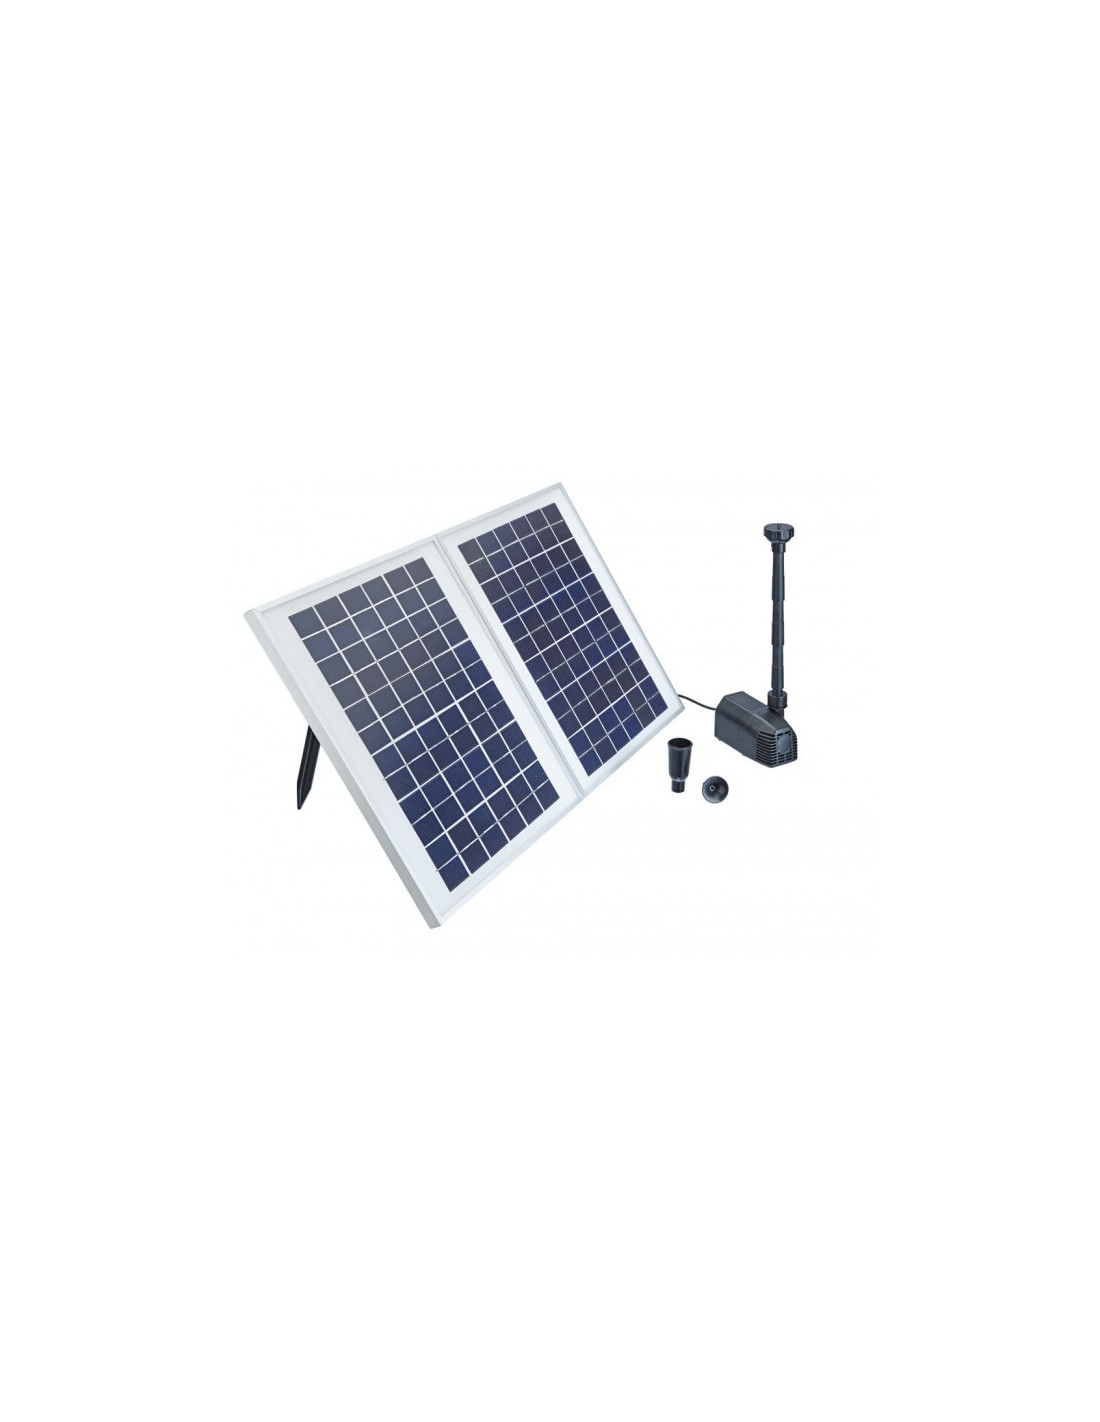 Fuente Solar Pontec 1600 kit completo con bomba y paneles solares